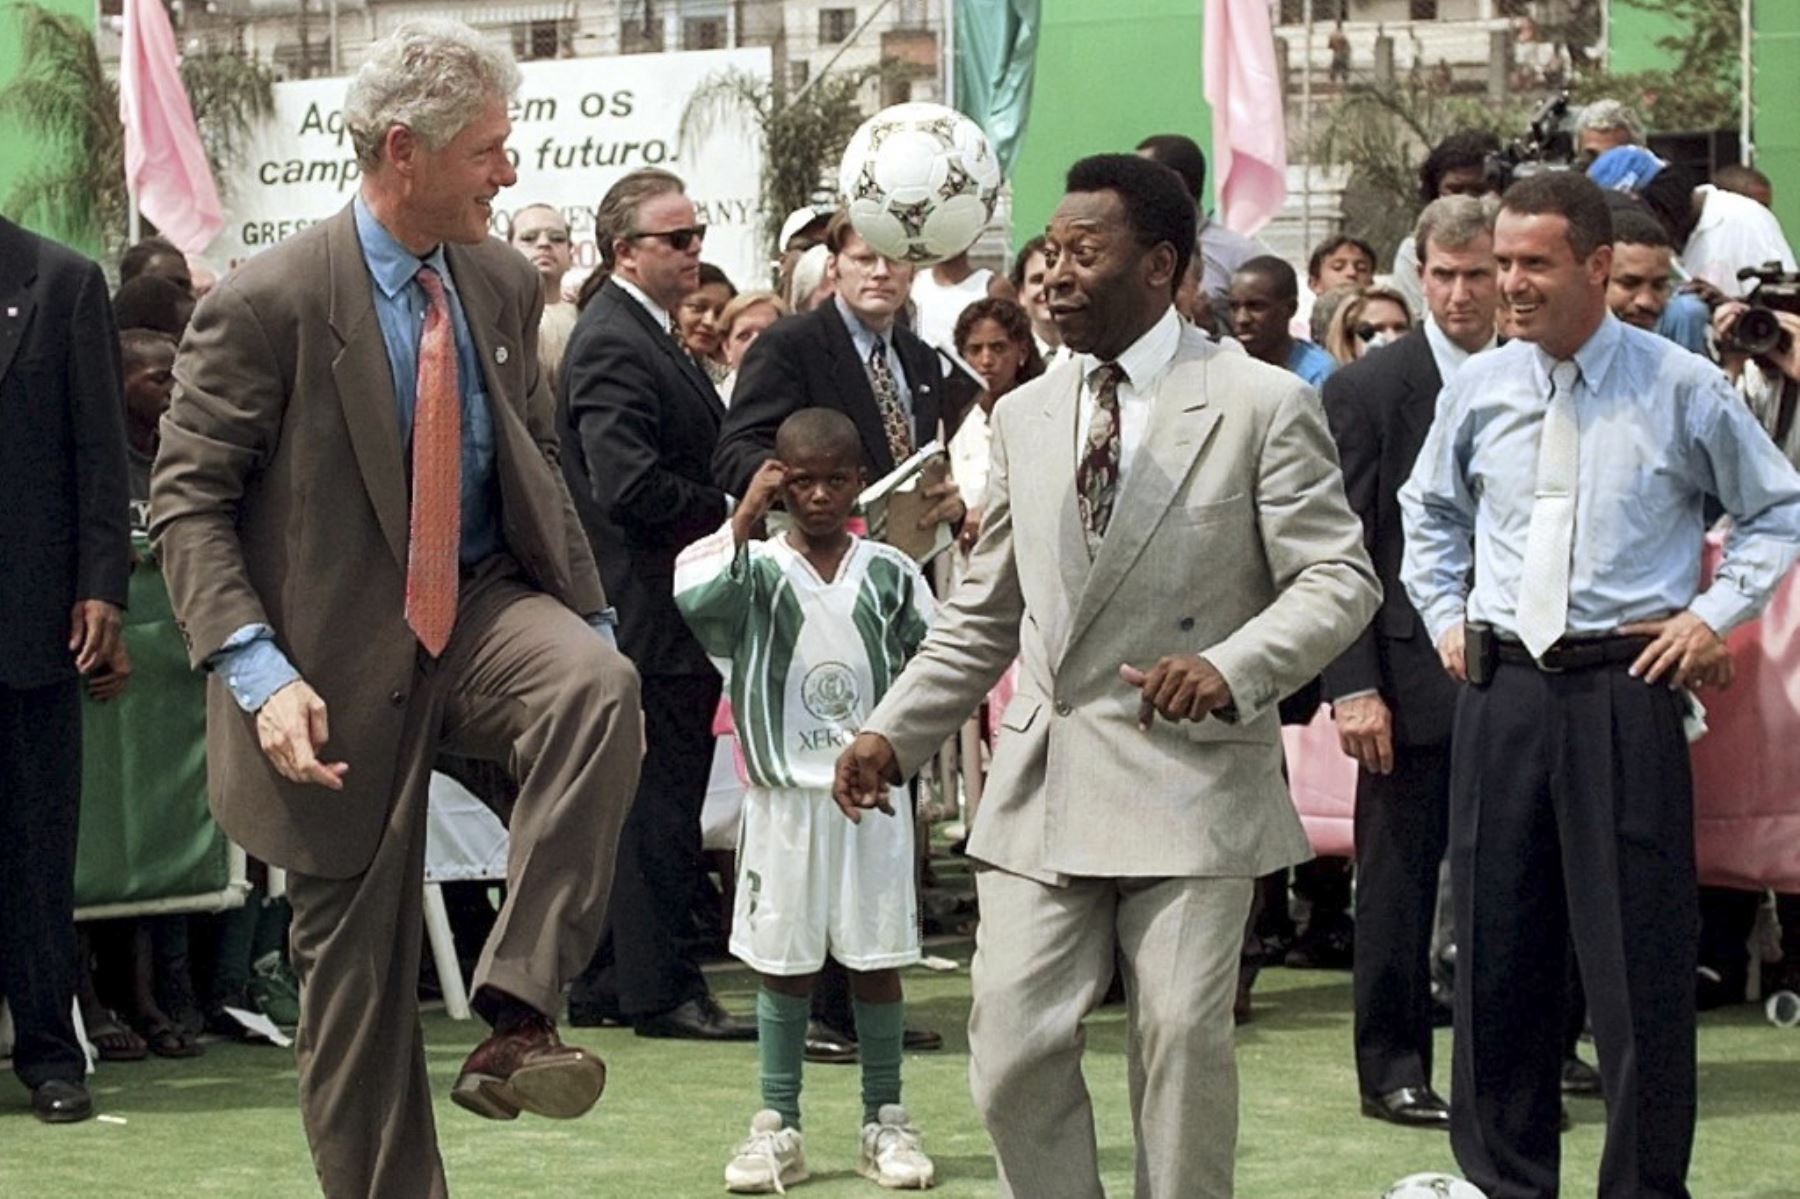 El presidente de los Estados Unidos, Bill Clinton (izquierda), hace rebotar un balón de fútbol en su rodilla ante la leyenda del fútbol brasileño, Pelé (derecha), el 15 de octubre durante una visita a la Escuela Mangueira en la favela del mismo nombre en Río de Janeiro.

Foto:AFP